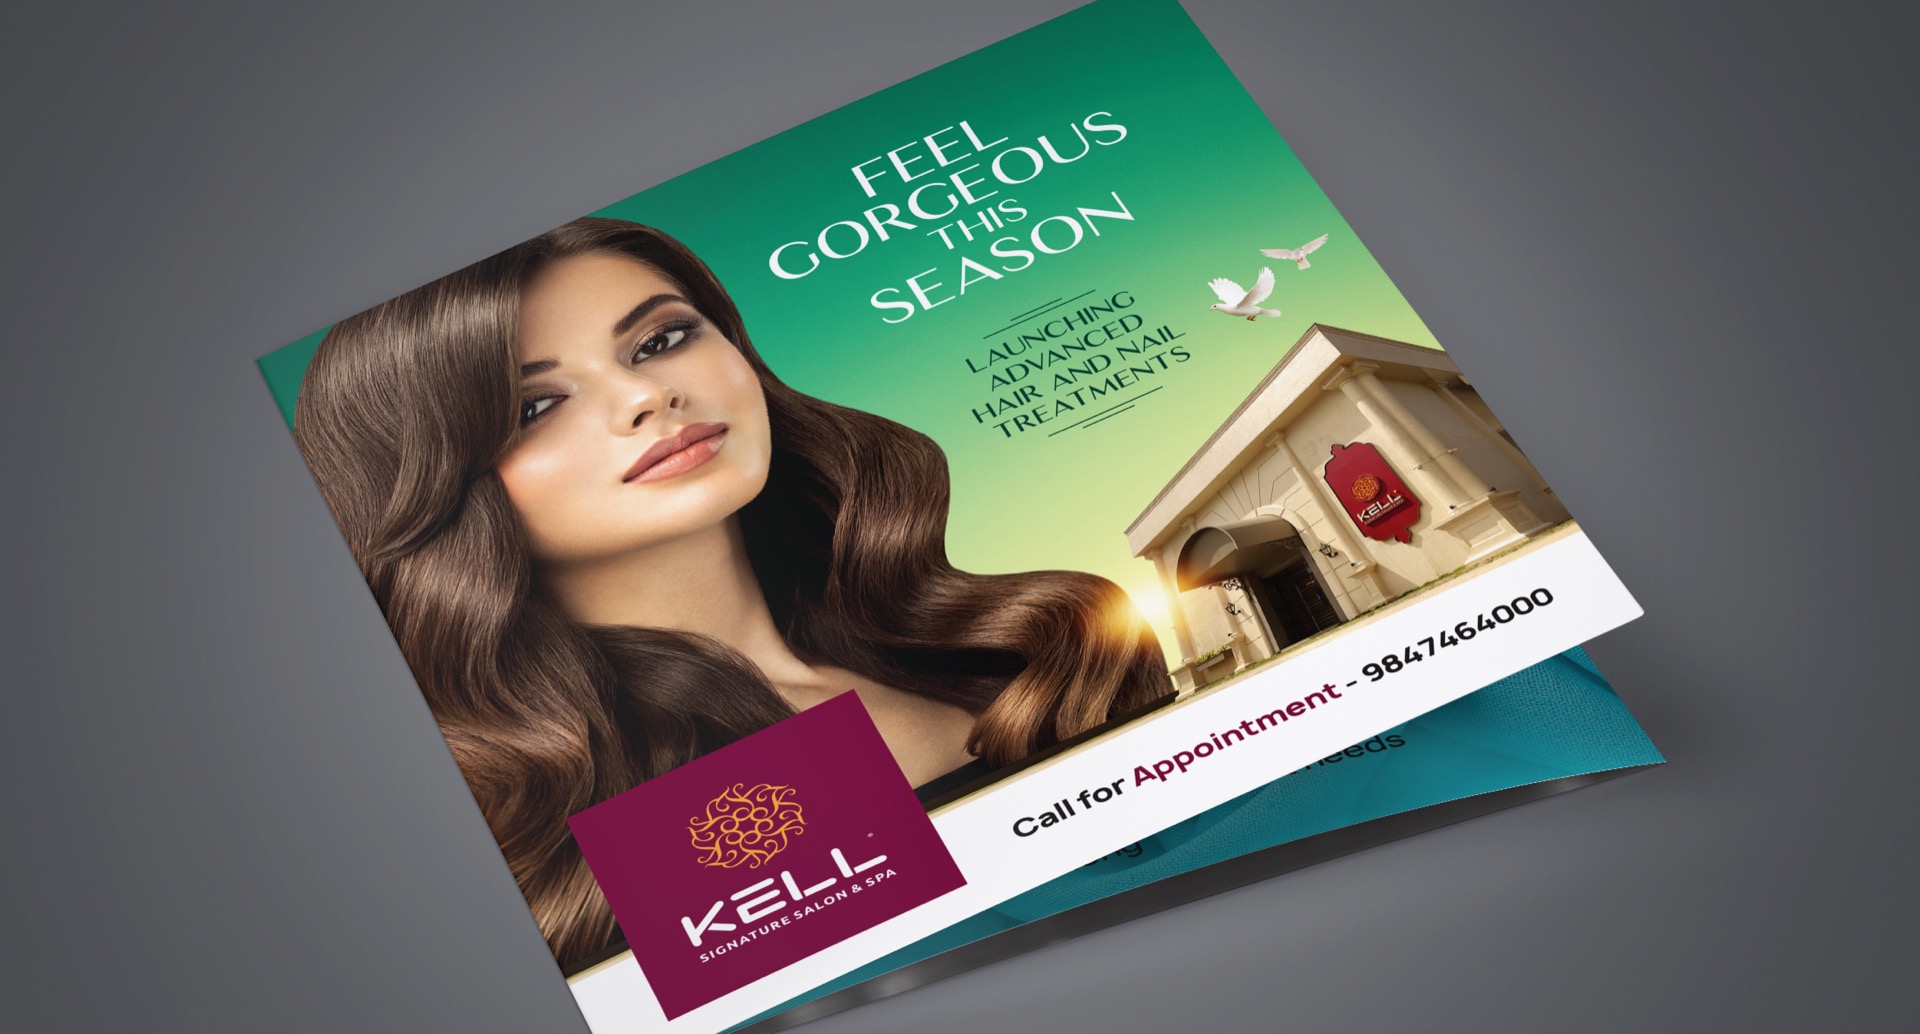 KELL Signature Salon & Spa Brochure Cover Design